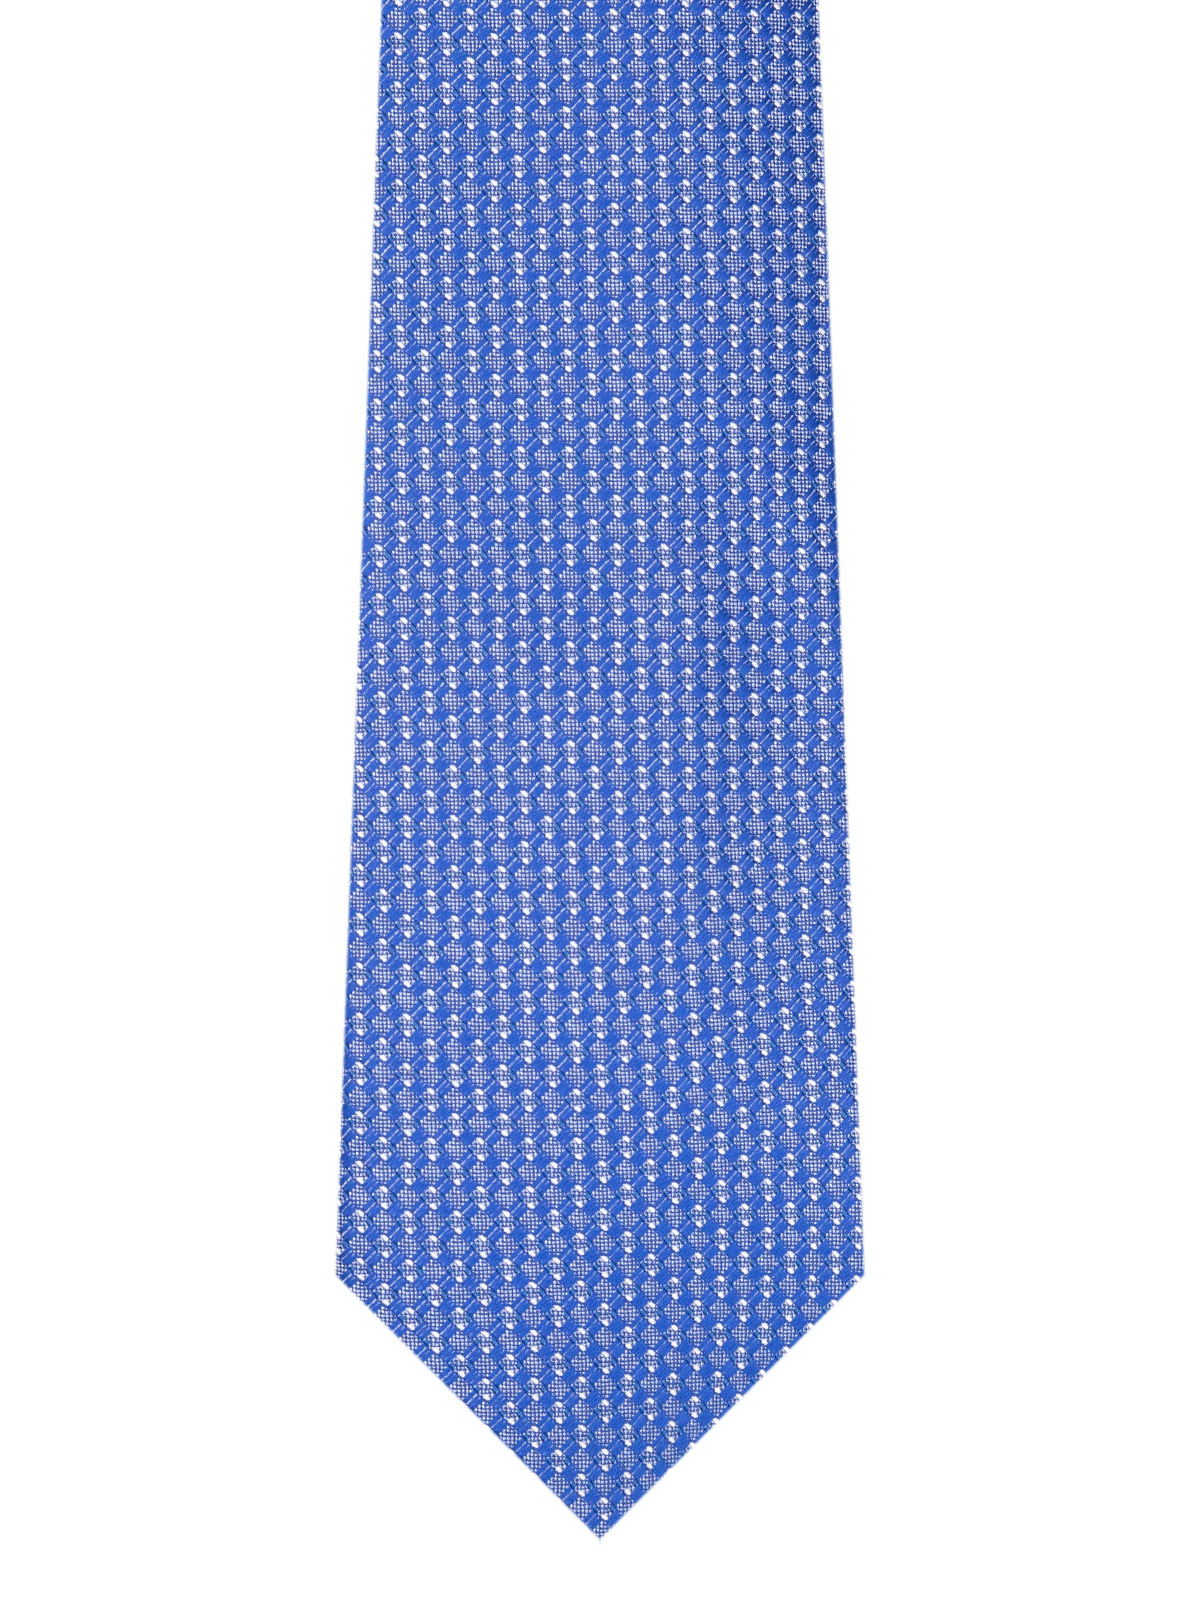 Cravată structurată în albastru deschis - 10203 - € 14.06 img2